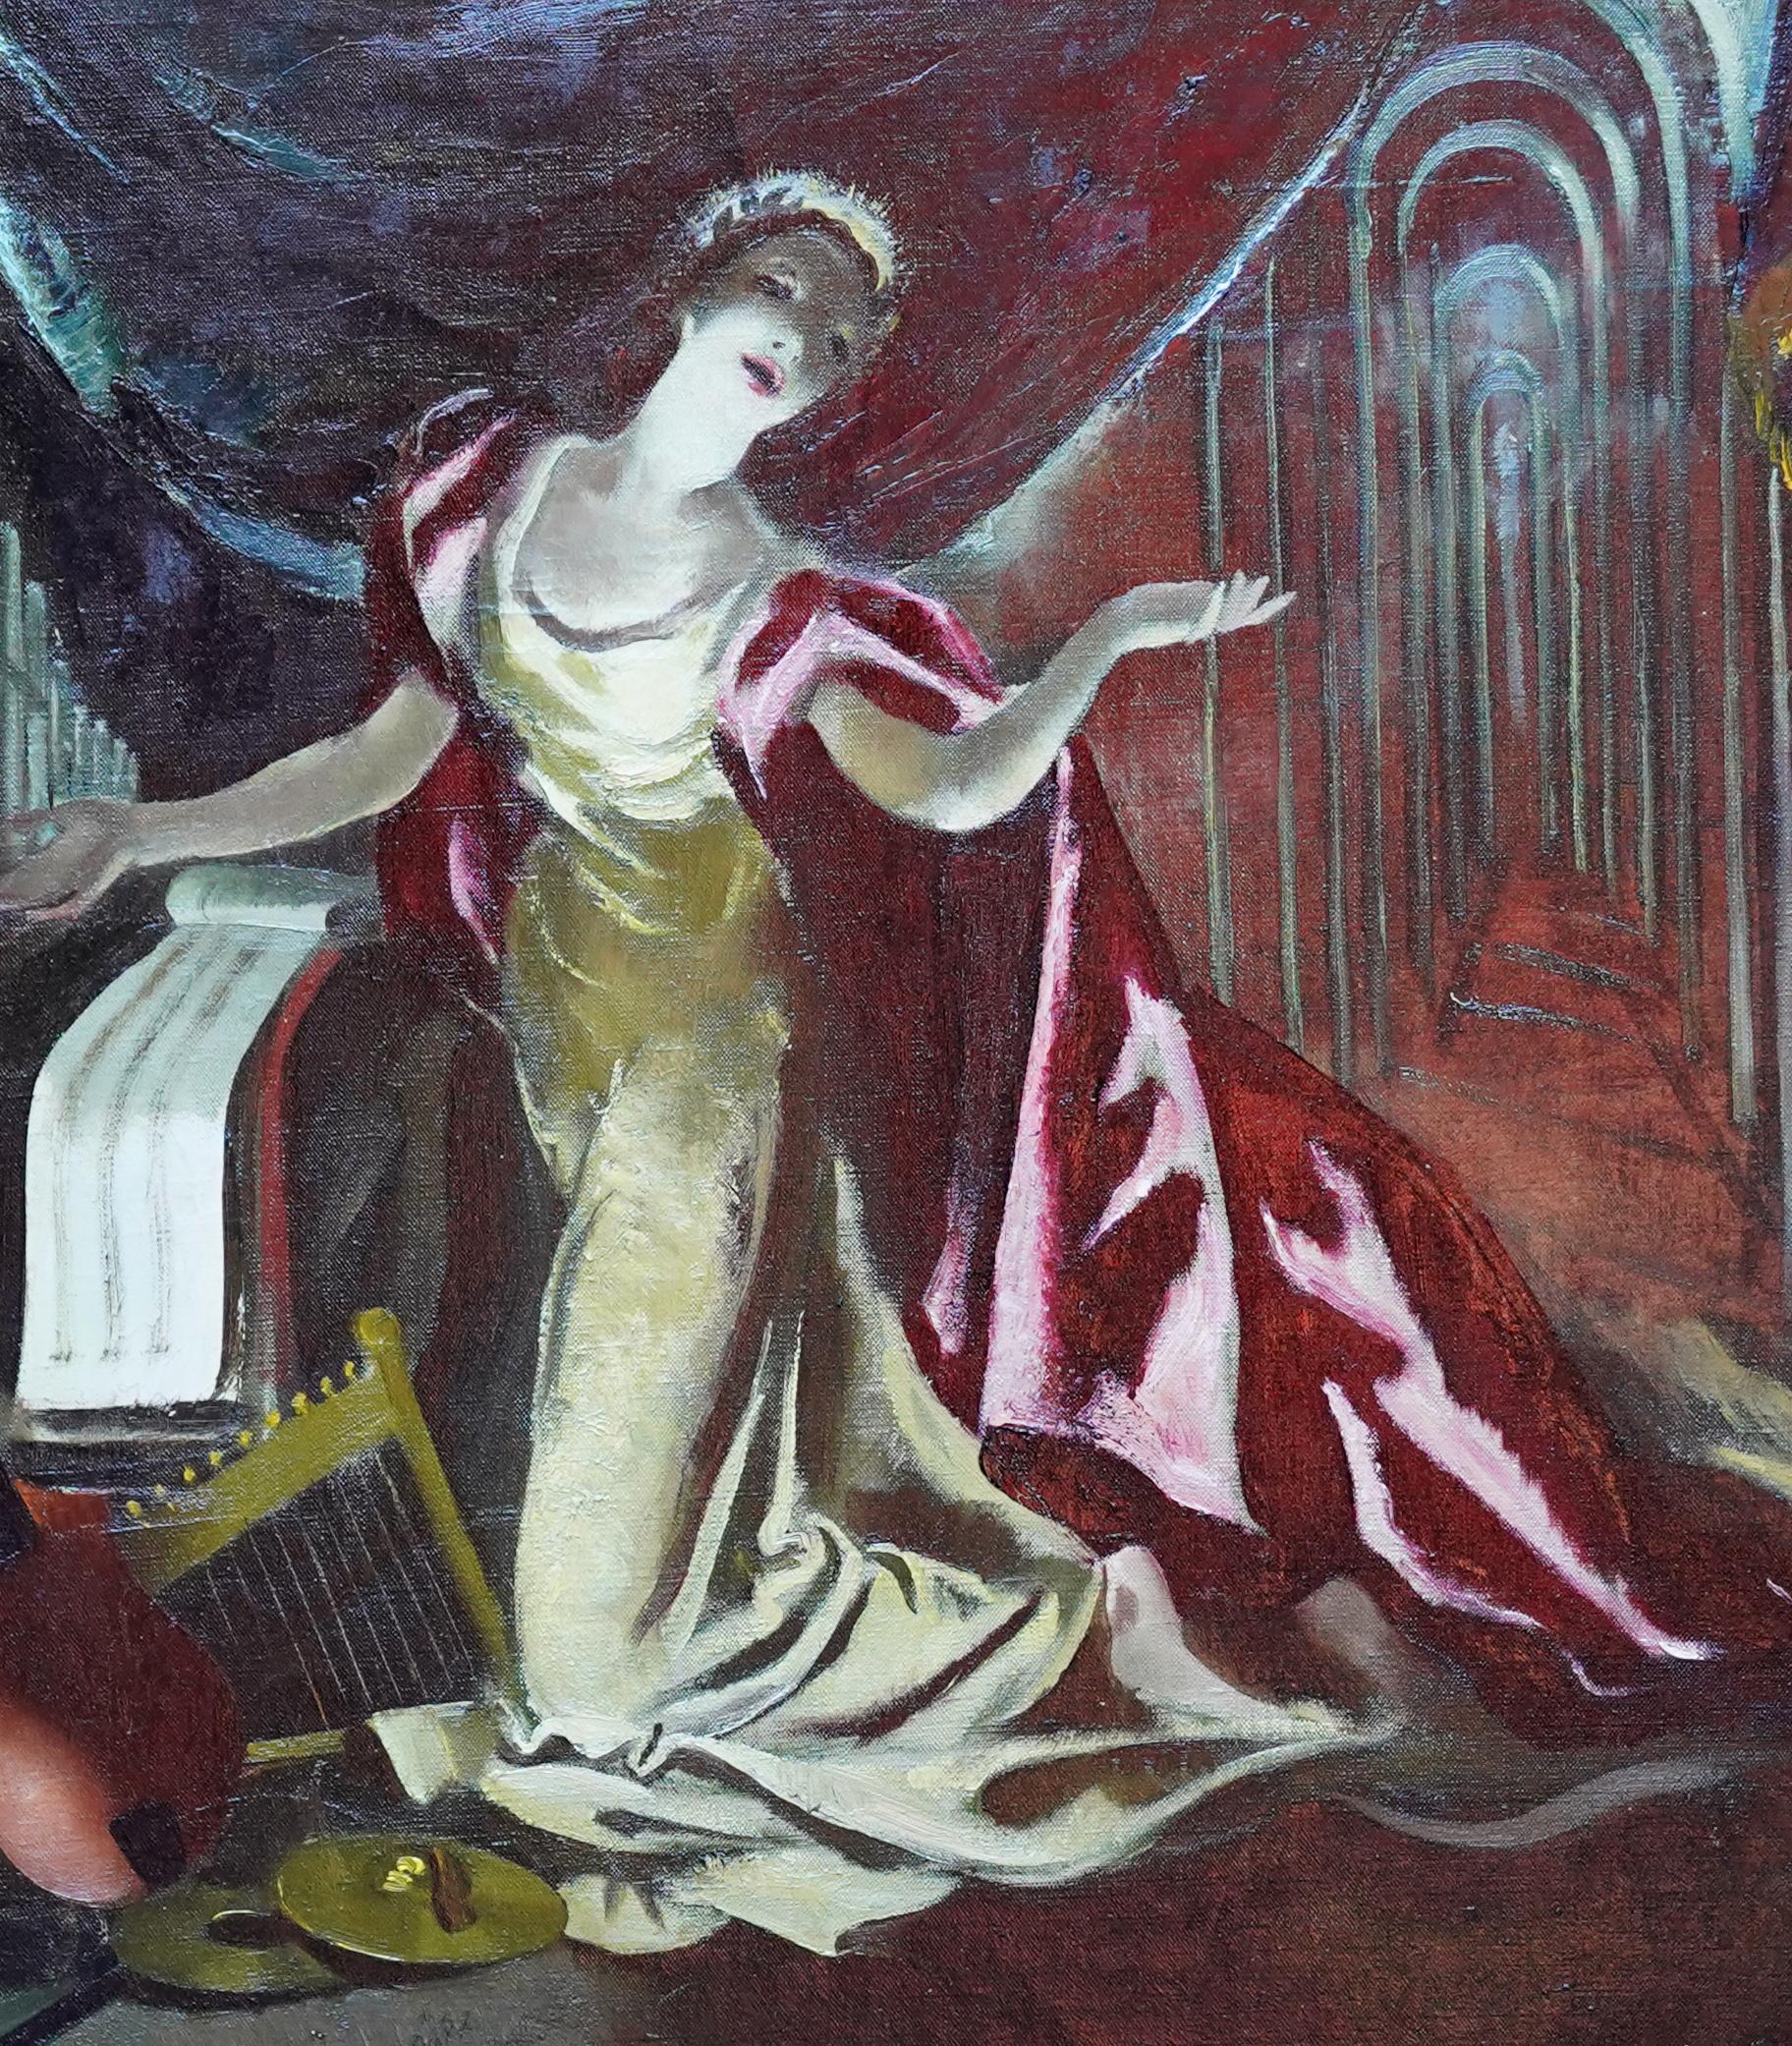 Portrait sur scène - Cape rouge - Peinture à l'huile d'un portrait théâtral écossais des années 60 - Réalisme Painting par Doris Zinkeisen